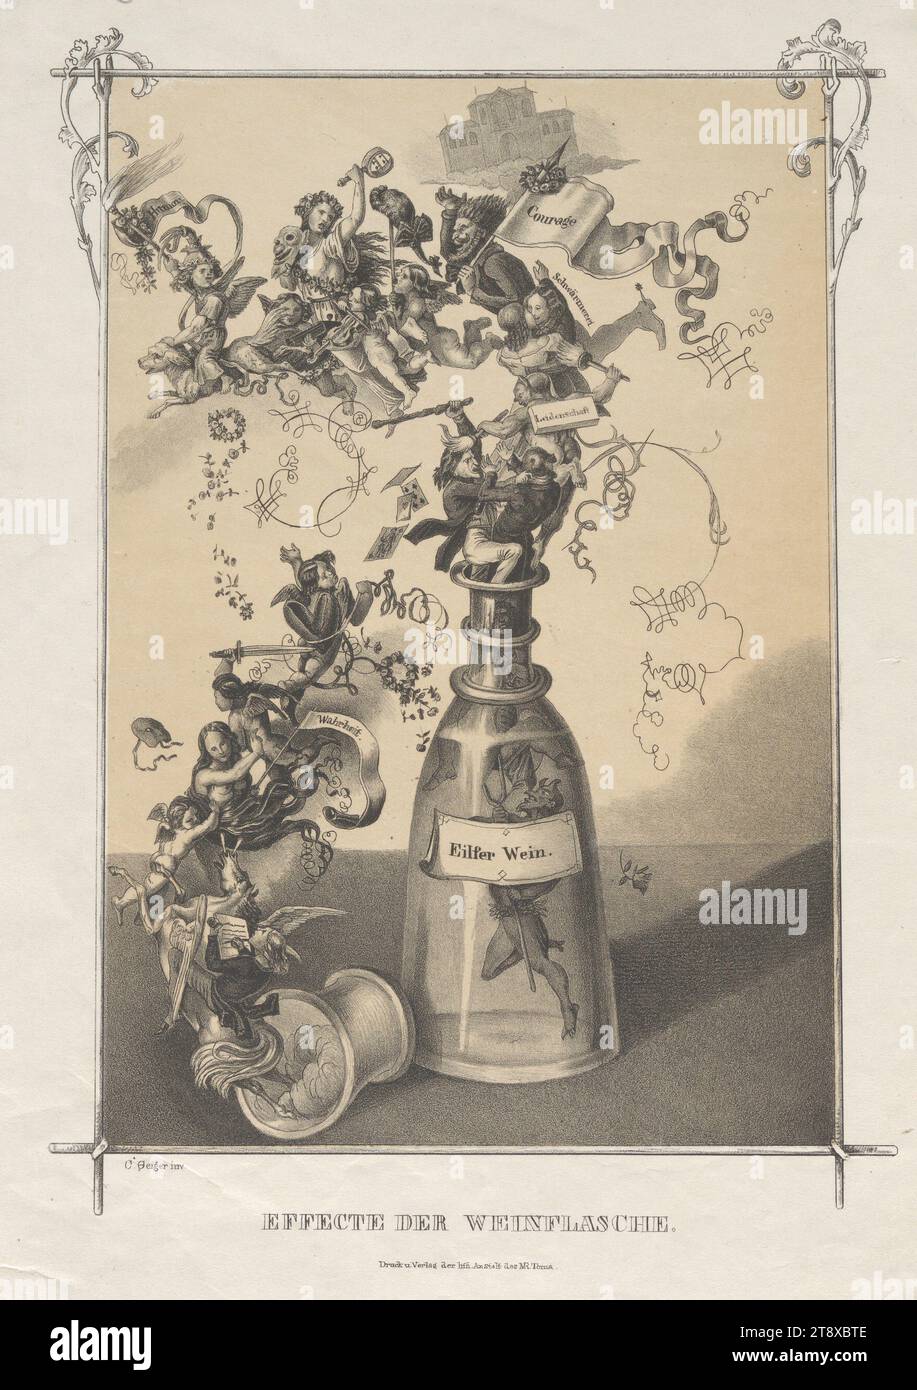 EFFECTE DER WEINFLASCHE." (Karikatur: Aus einer Flasche 'Eilfer Wein' 'Passion', 'Begeisterung', 'Mut', 'Humor' und 'Wahrheit' Aufstieg), Carl Josef Geiger (1822-1905), Lithograph, Matthias Rudolph Toma (1792-1869), Verlag, 1848, Papier, Kreide-Lithografie, Höhe 34 cm, Breite 24, 6 cm, Karikatur, Satire, Revolutionen von 1848, 1849, Glasbehälter: Flasche, Glas, Vase, Sammlung Wien Stockfoto